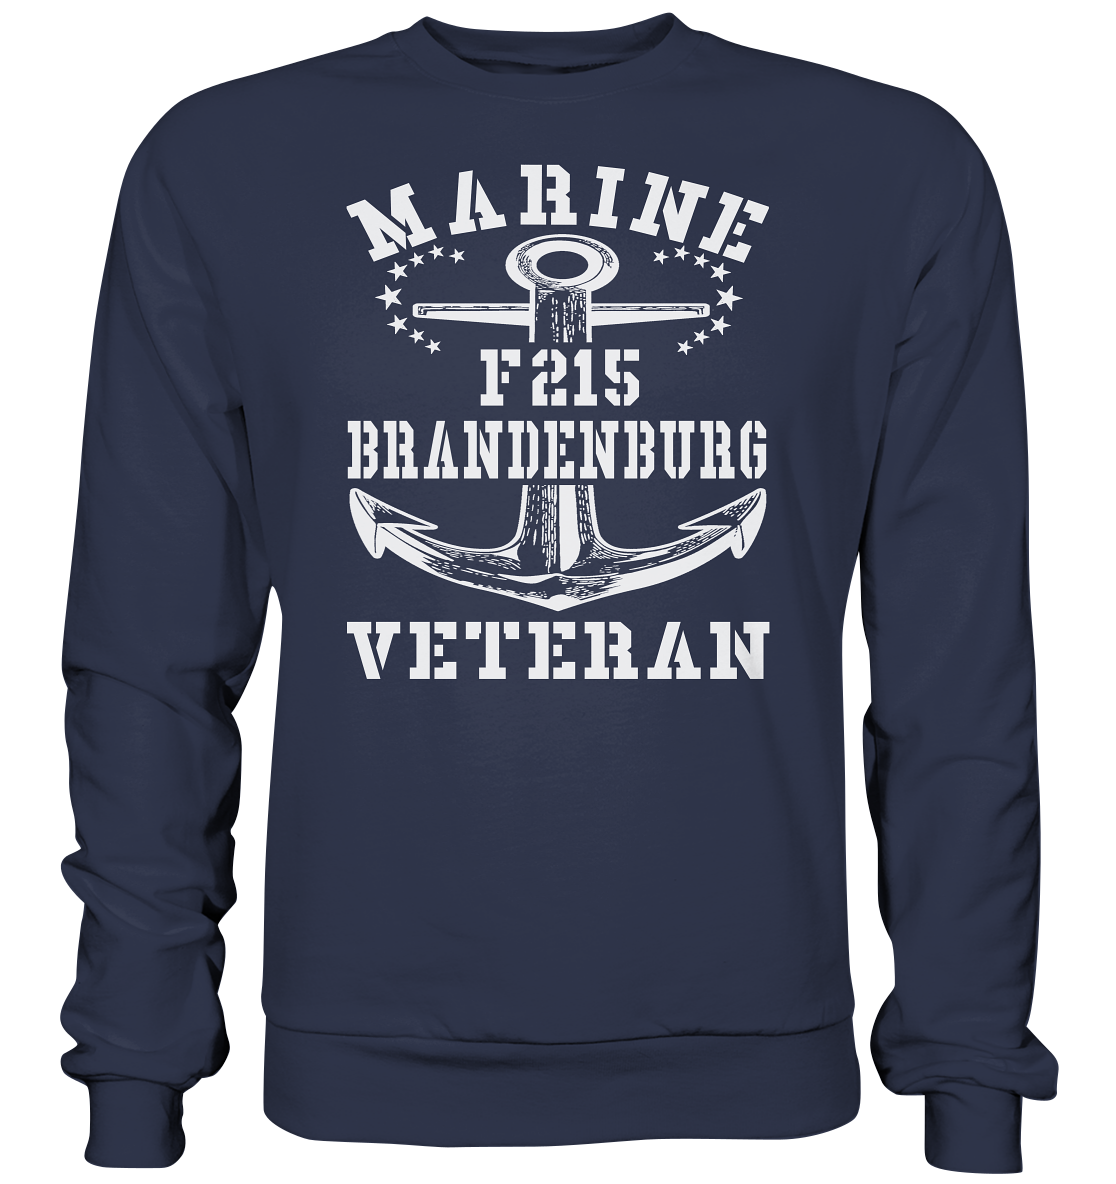 Fregatte F215 BRANDENBURG Marine Veteran - Premium Sweatshirt